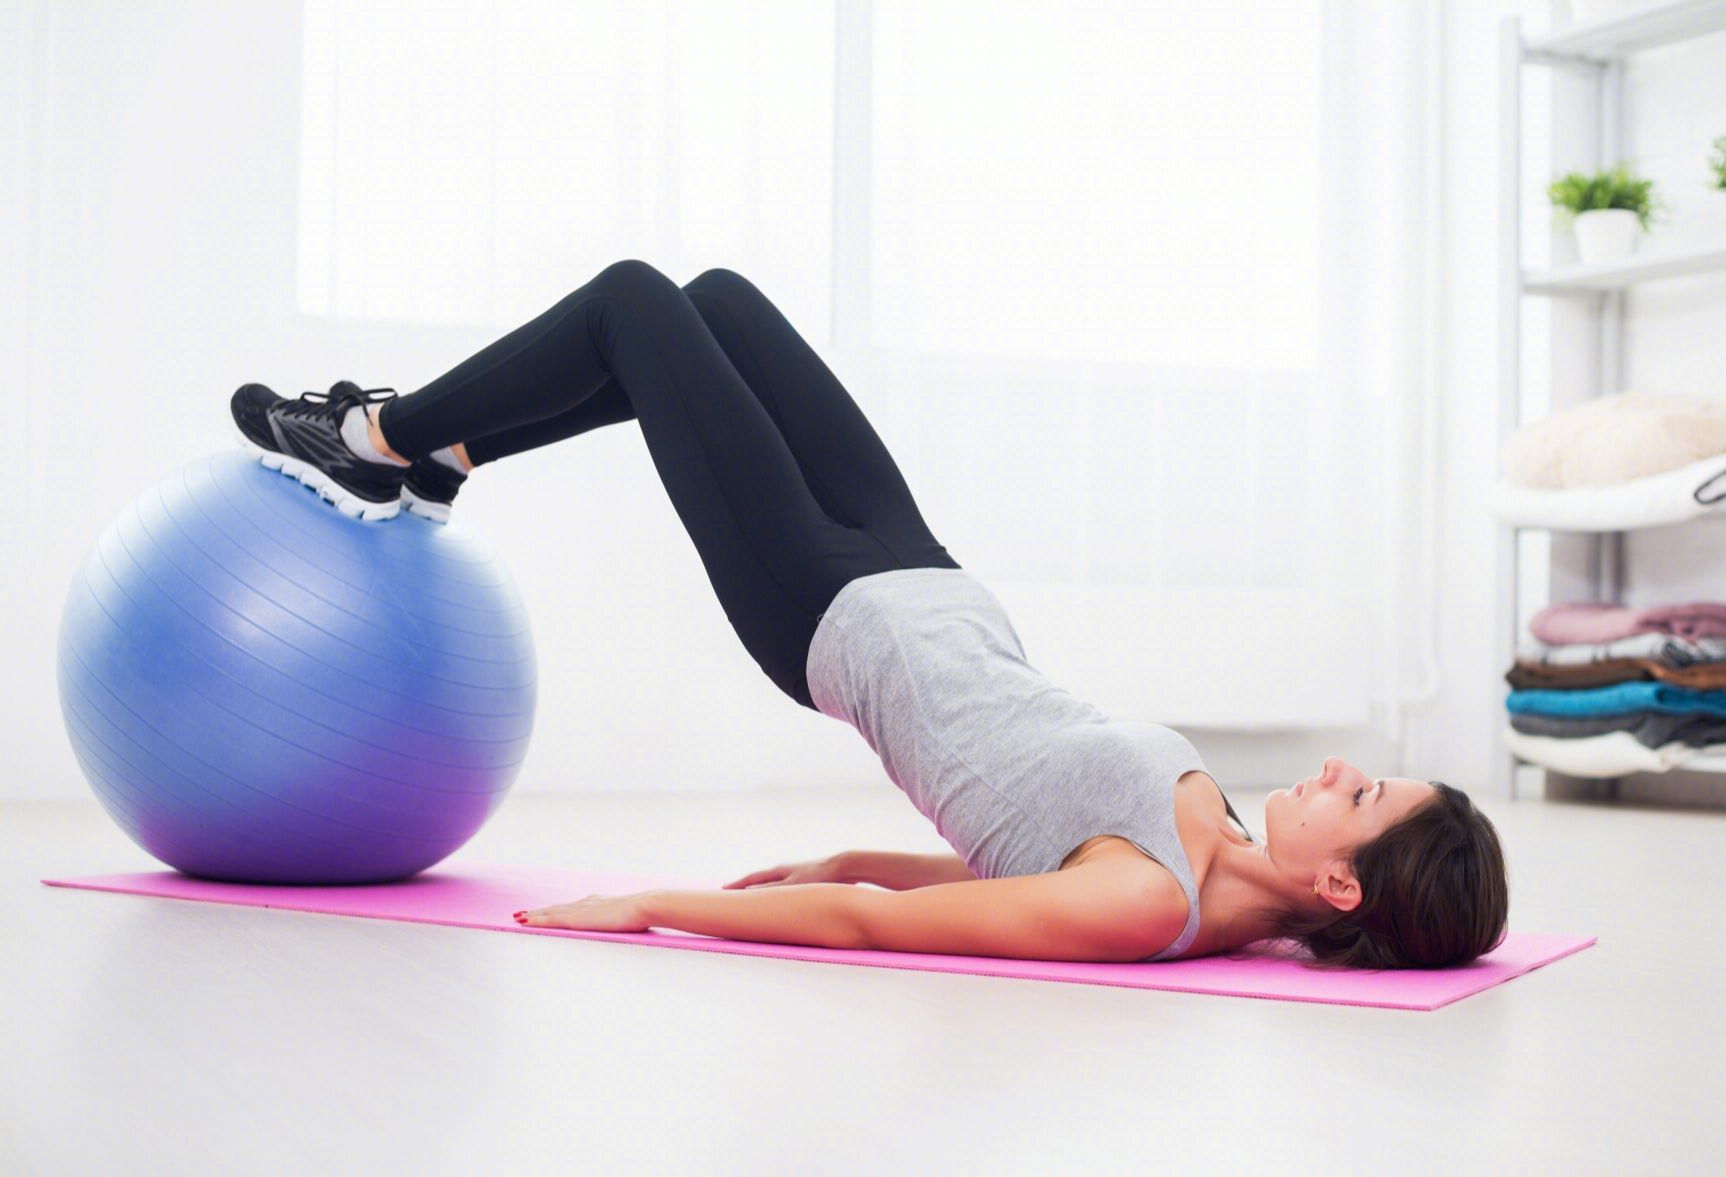 髋外展肌肉力量的训练对髋关节稳定性的作用